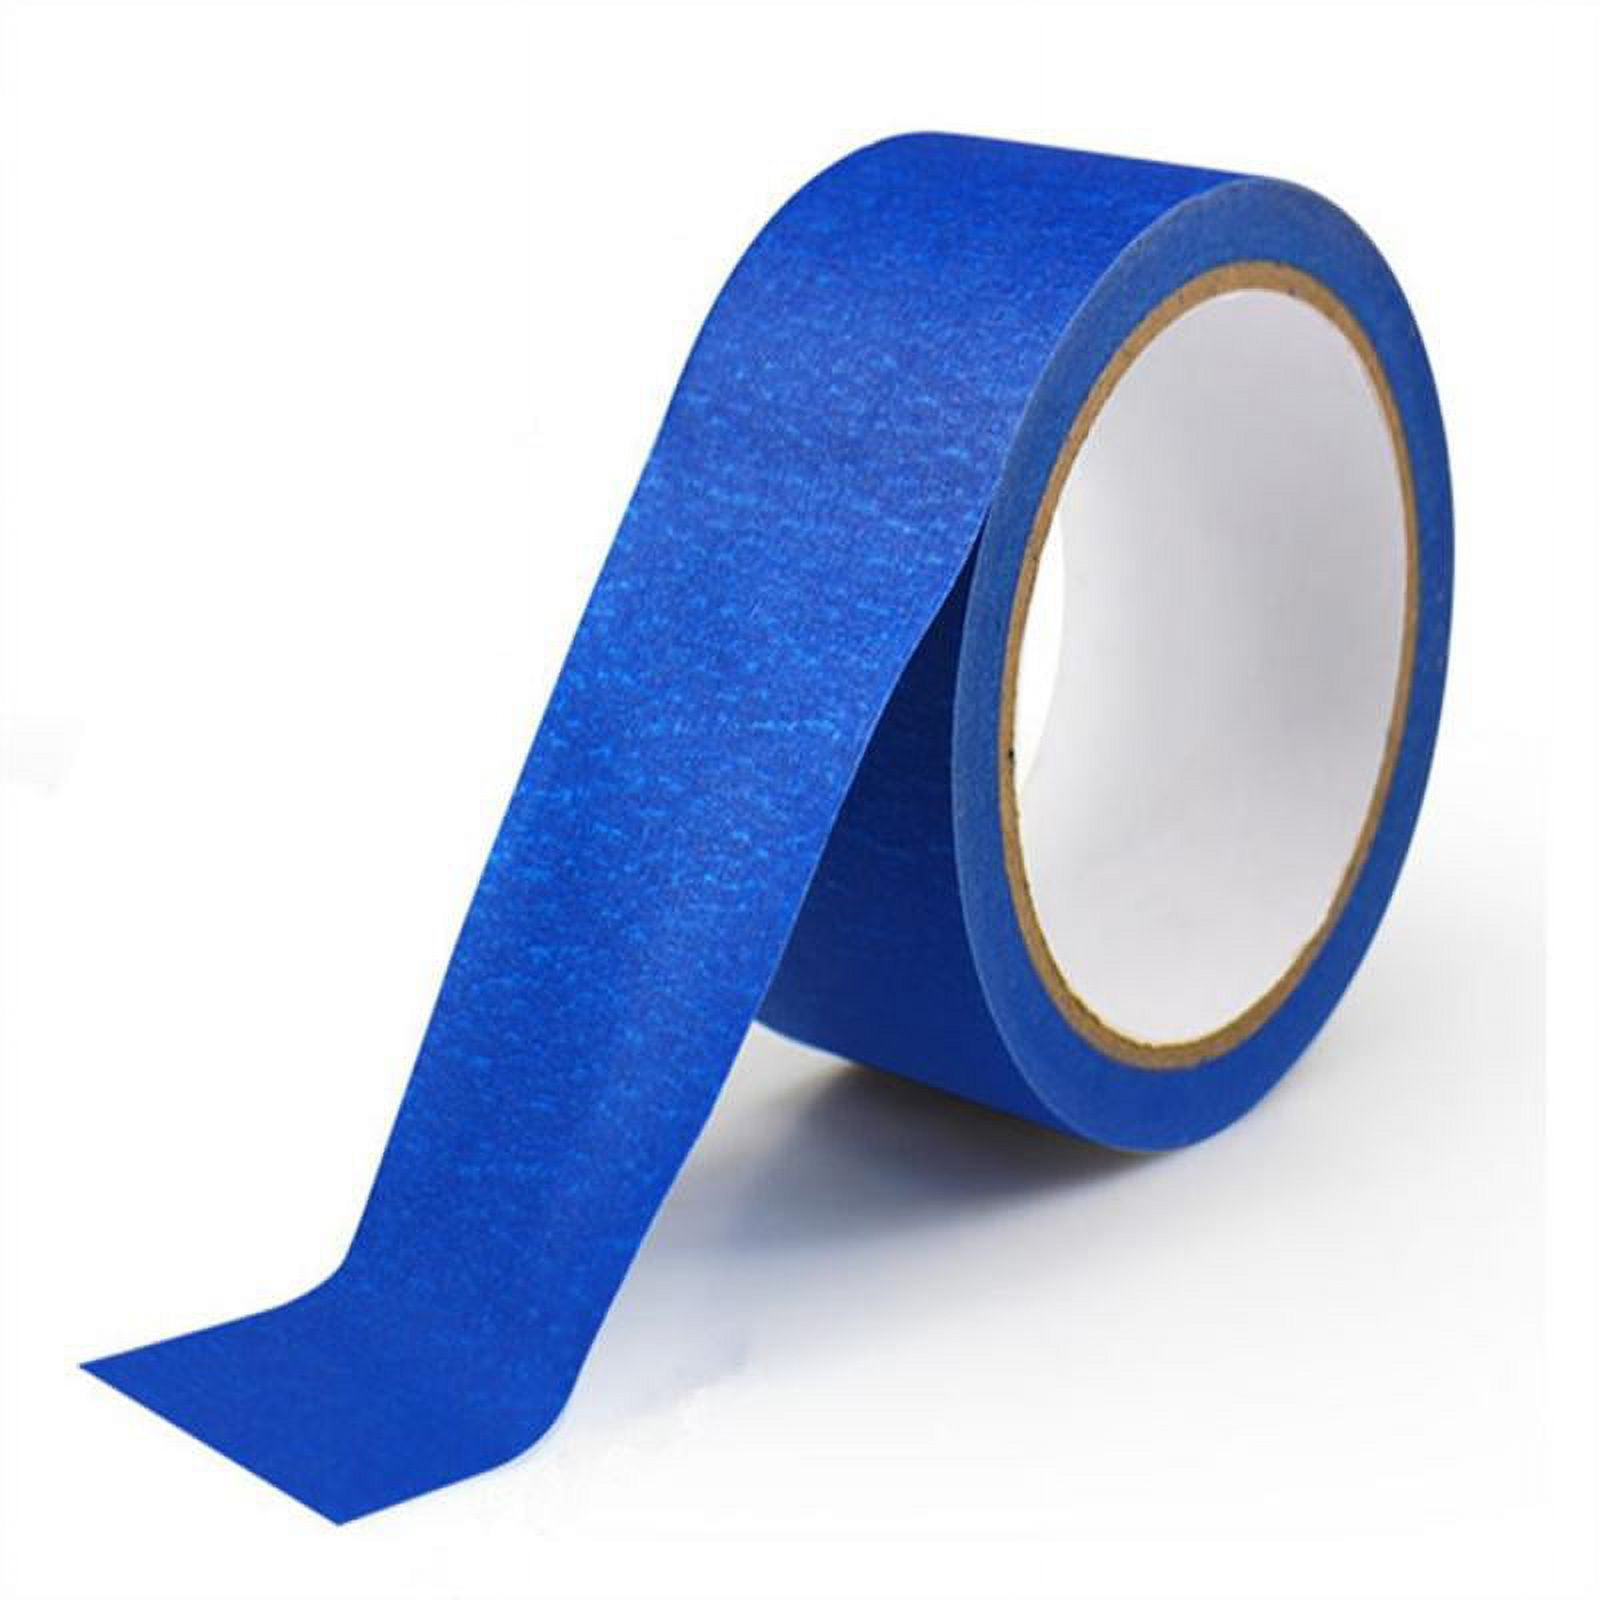 Multi surface Painters Tape Blue Crepe Paper Masking Tape - Temu